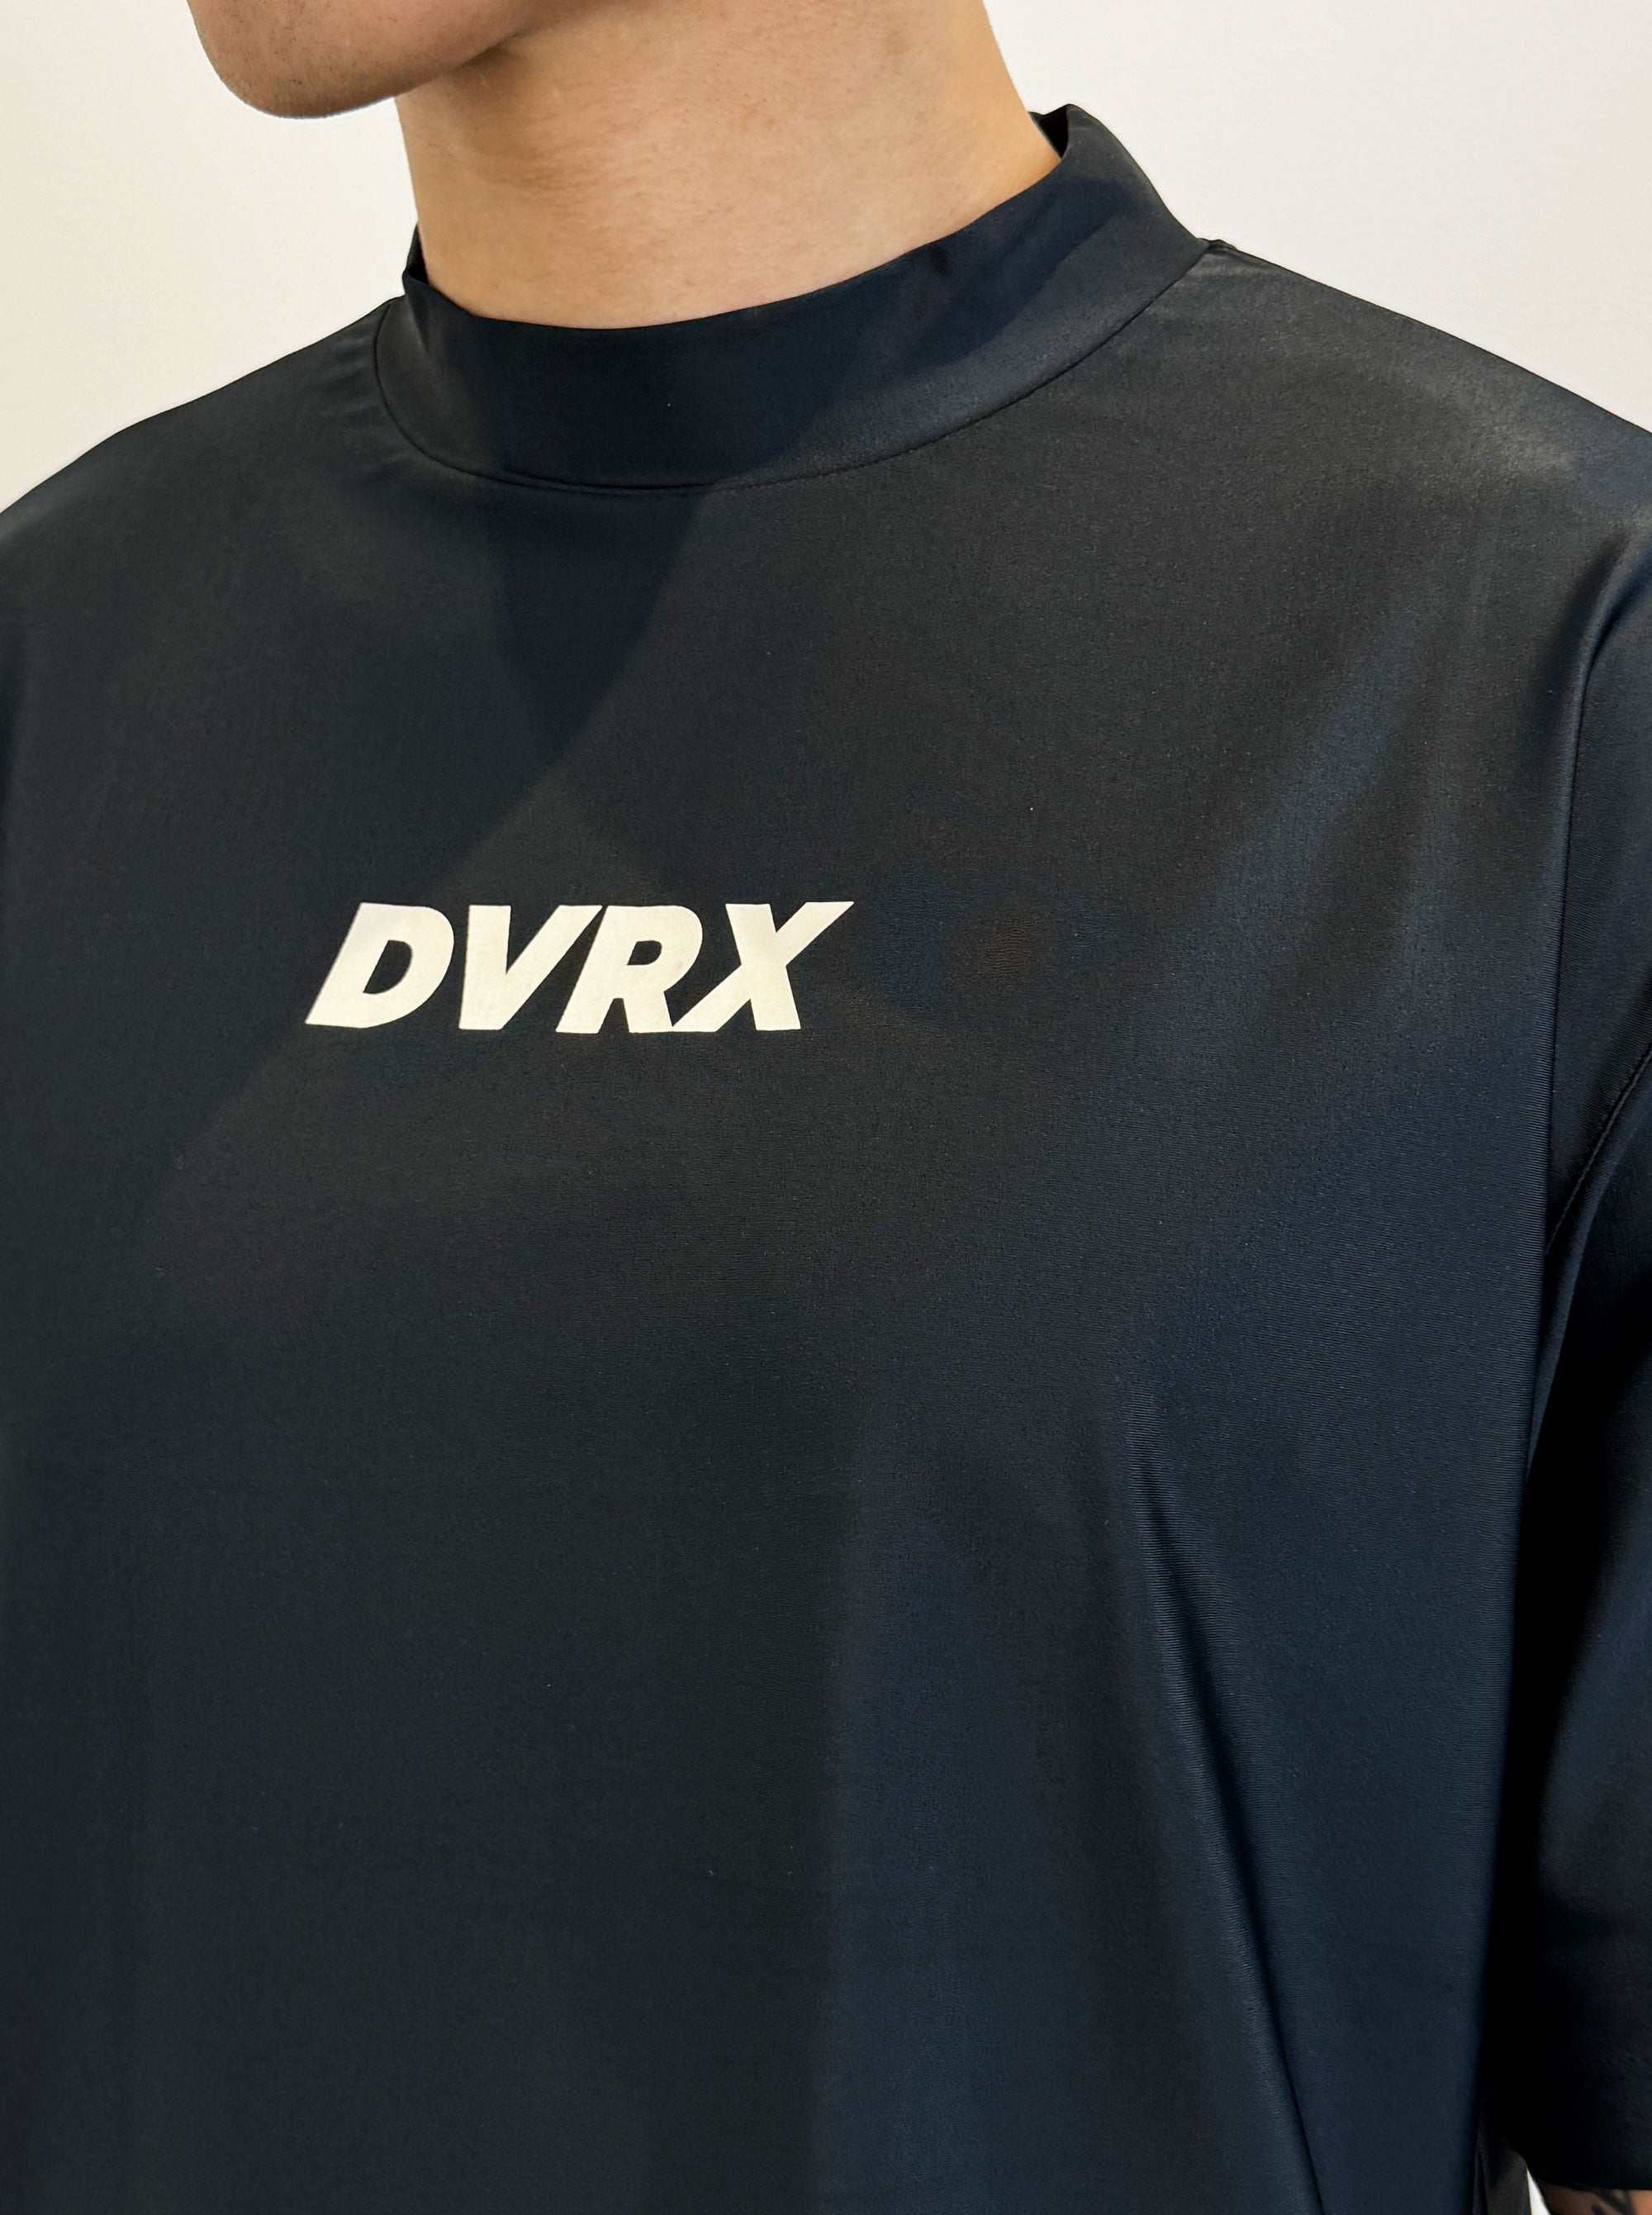 DVRX ラッシュガードモックS/S 763472007-BLACK